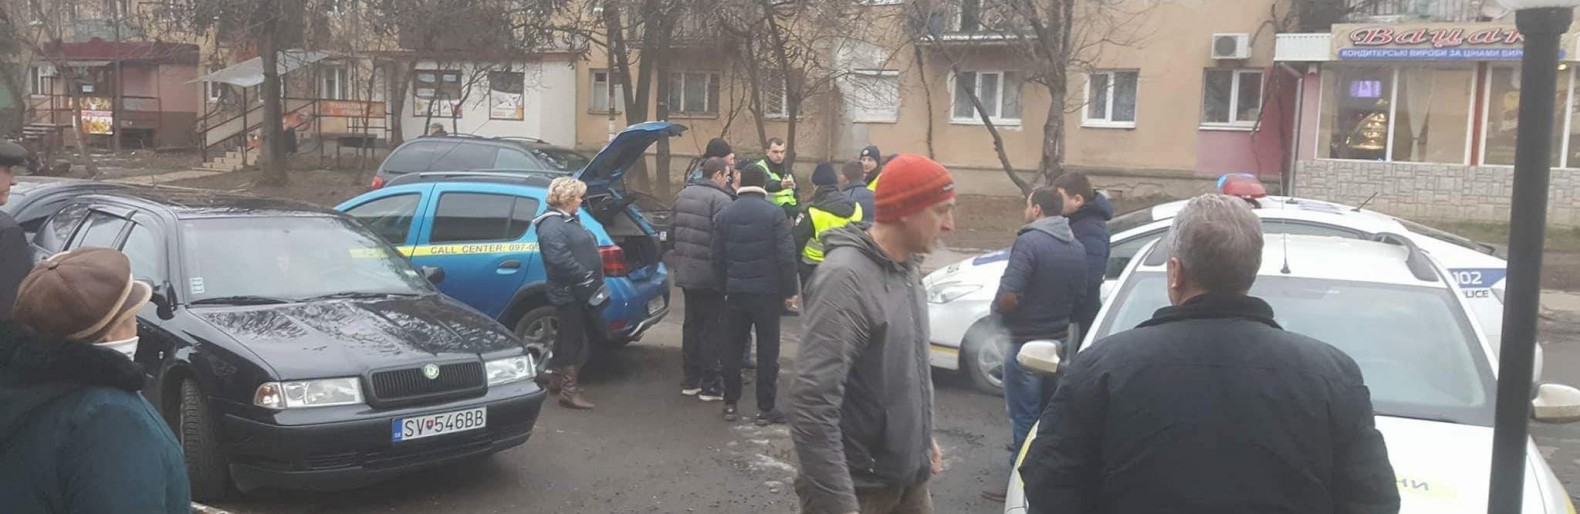 В Ужгороді авто служби охорони врізалось у припарковані автівки (ФОТО)